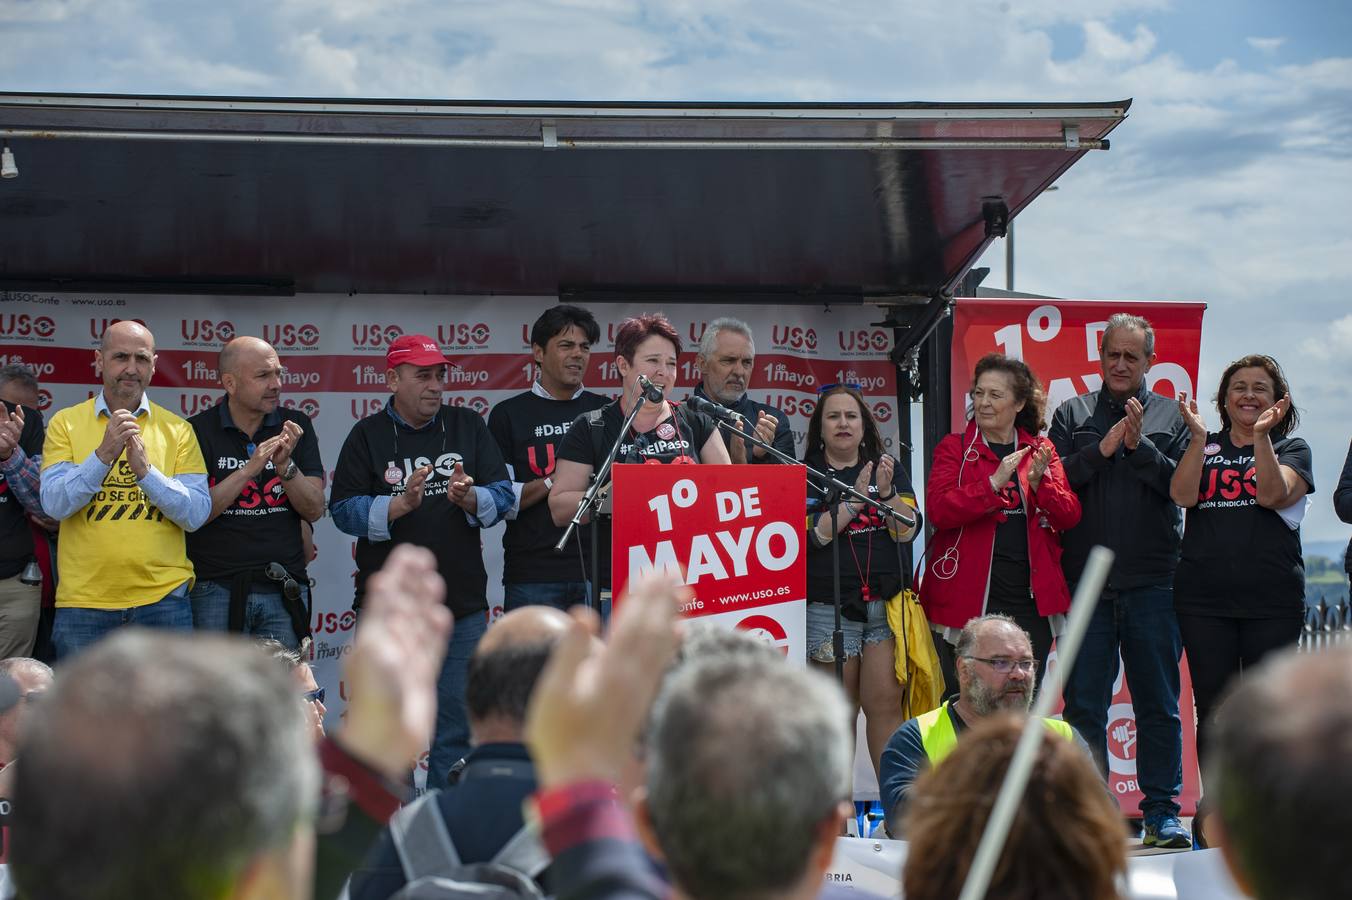 La Unión Sindical Obrera (USO) ha reunido alrededor de 3.000 personas en una manifestación que se ha celebrada en Santander, bajo el lema «se acabó el juego».